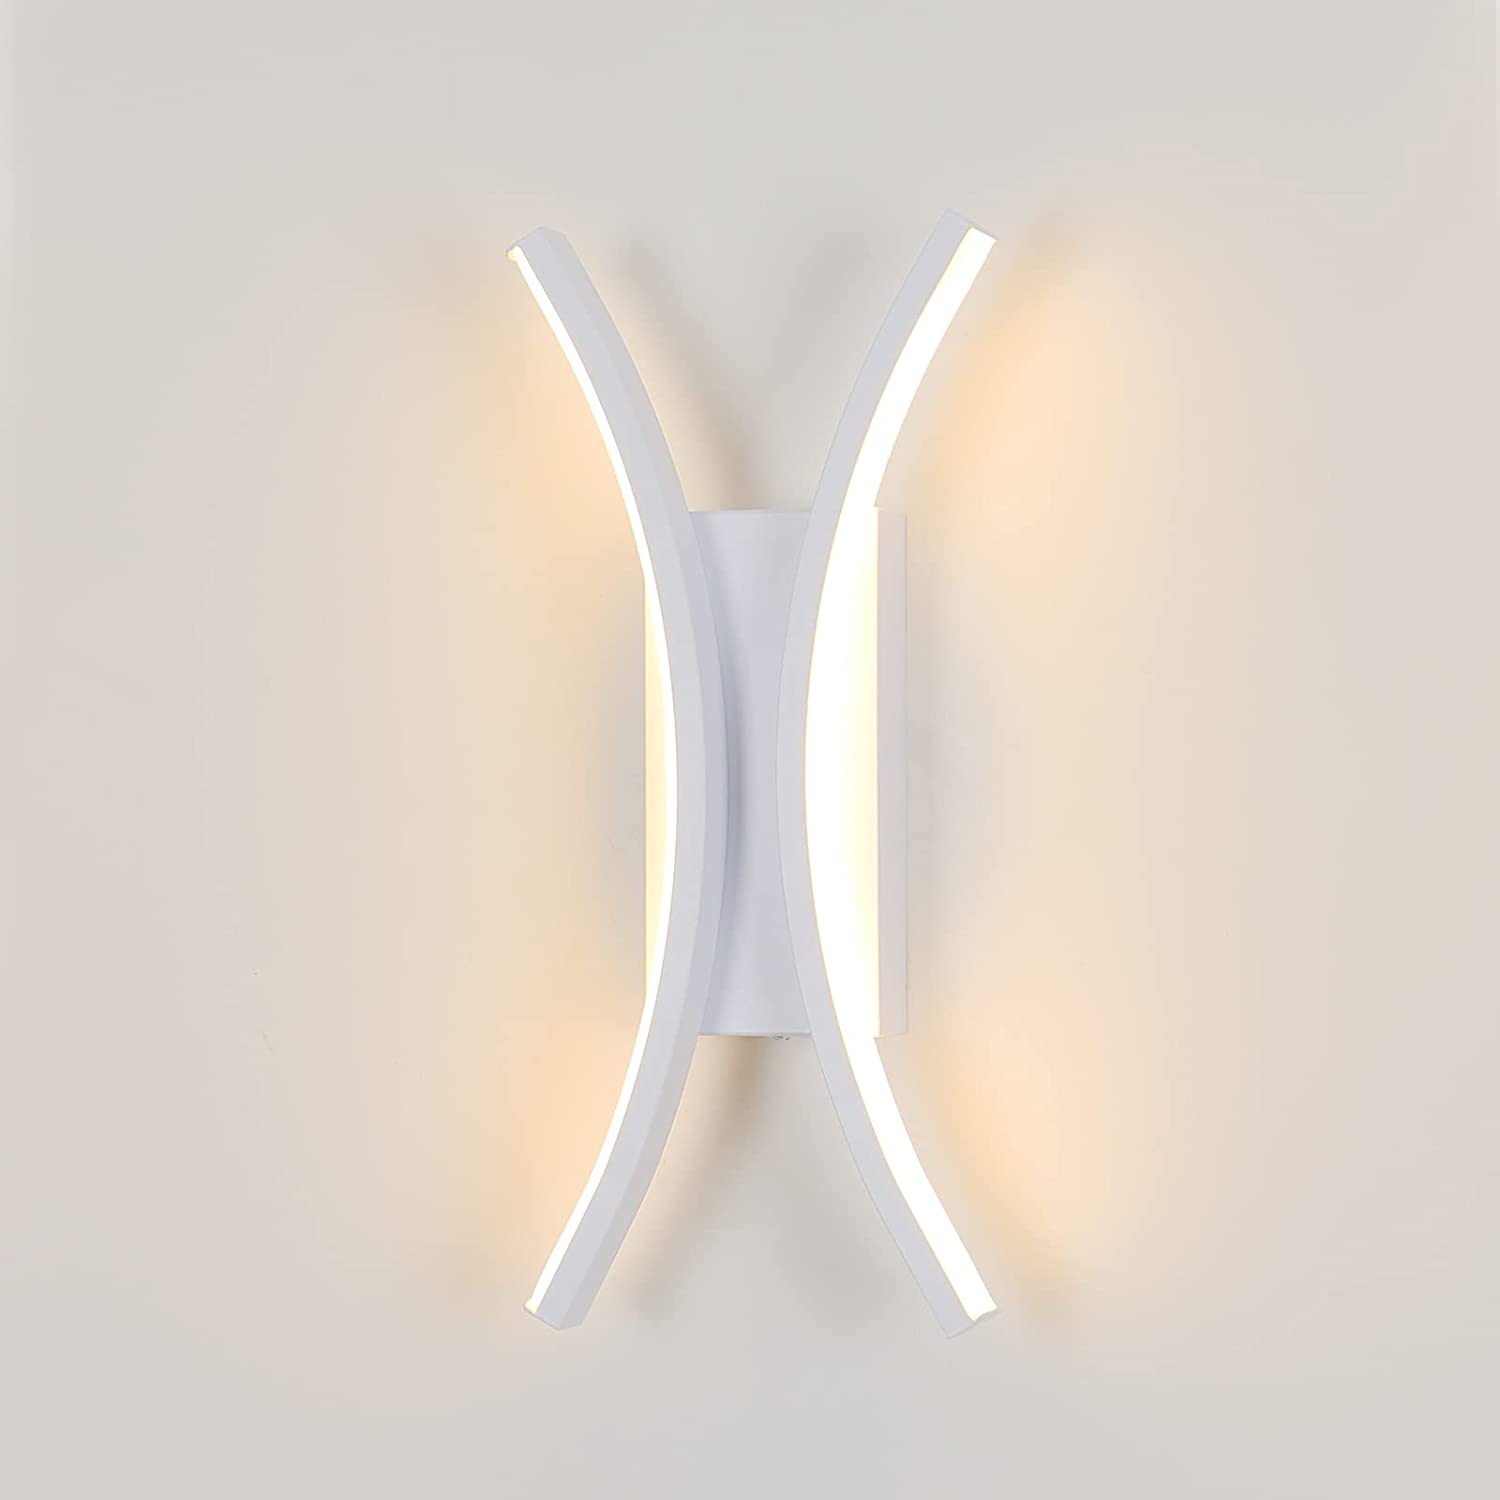 2x Applique Murale Interieur LED 30CM Lampe Murale 12W Blanc Froid  Luminaire Mural Moderne pour Chambre Salon Escalier Couloir